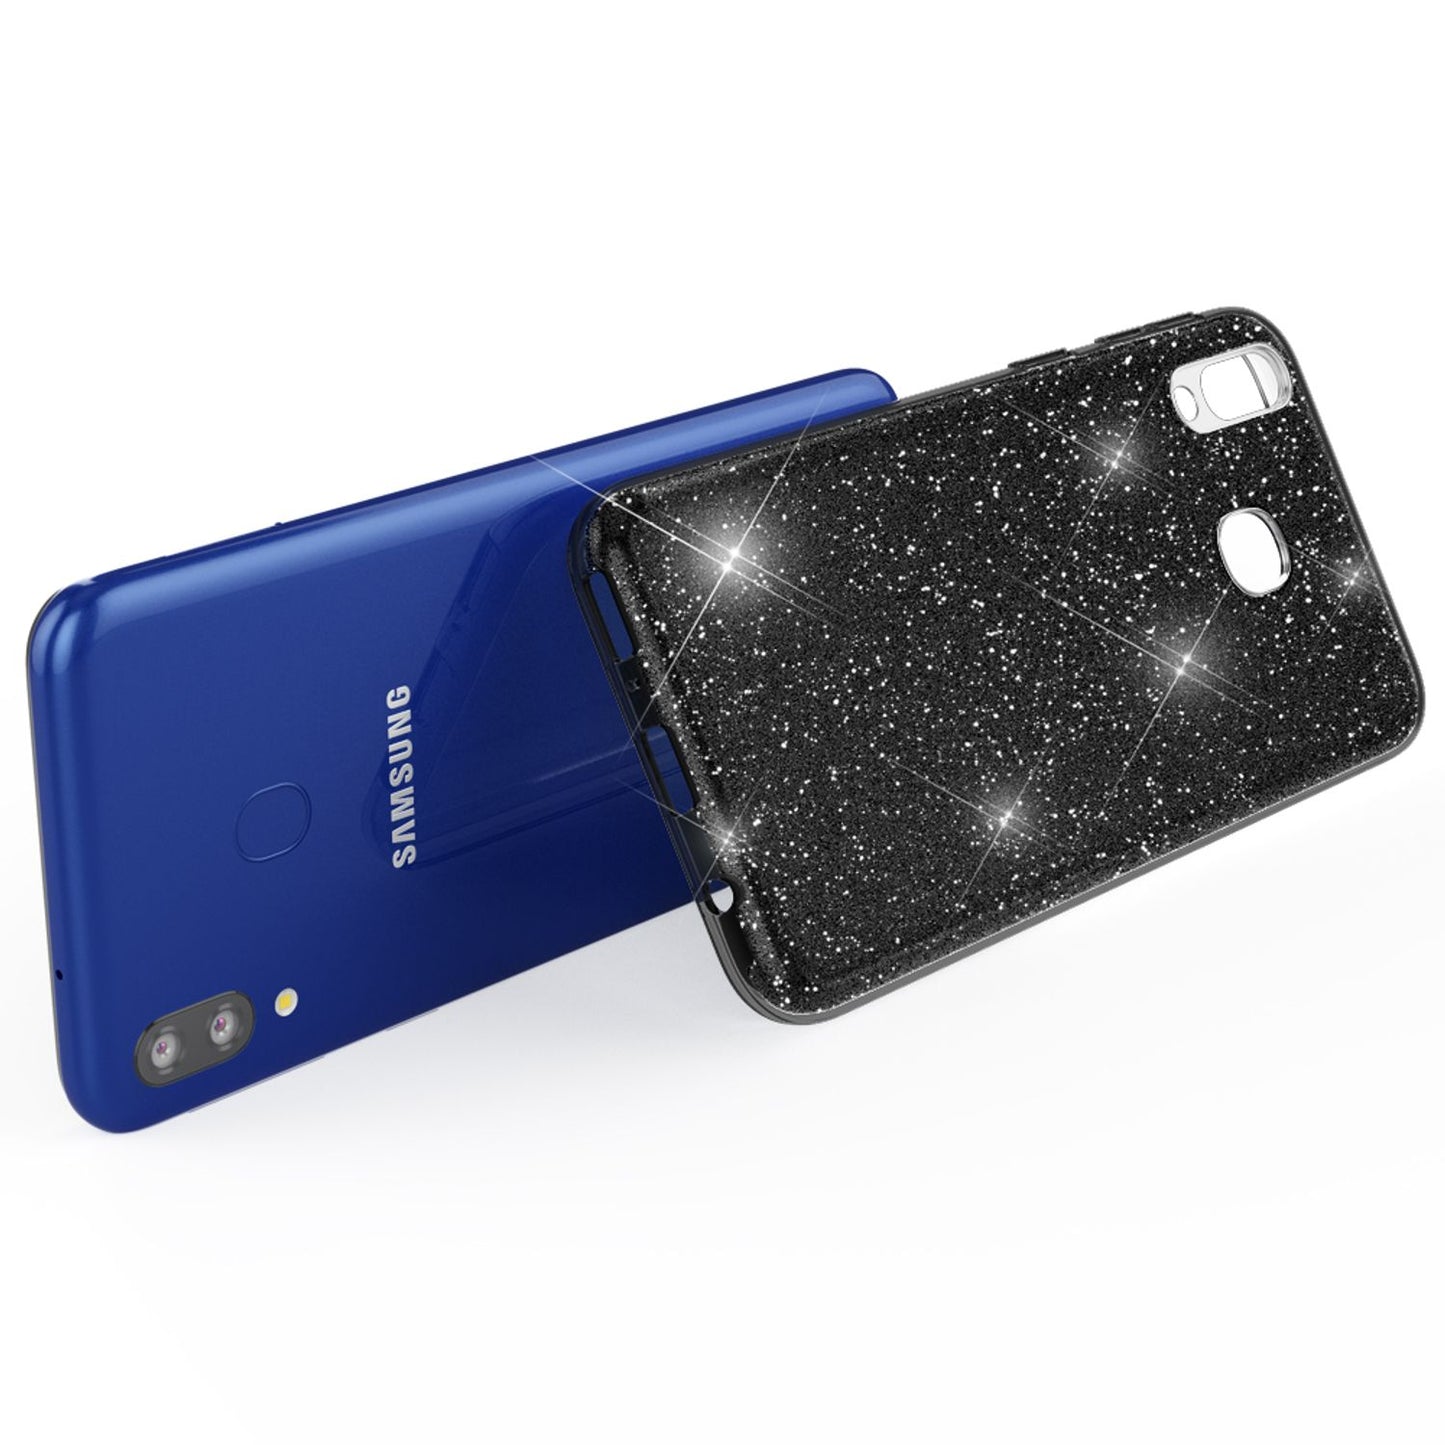 NALIA Glitzer Handyhülle für Samsung Galaxy M20 2019, Bling Schutzhülle Glitzer Handyhülle